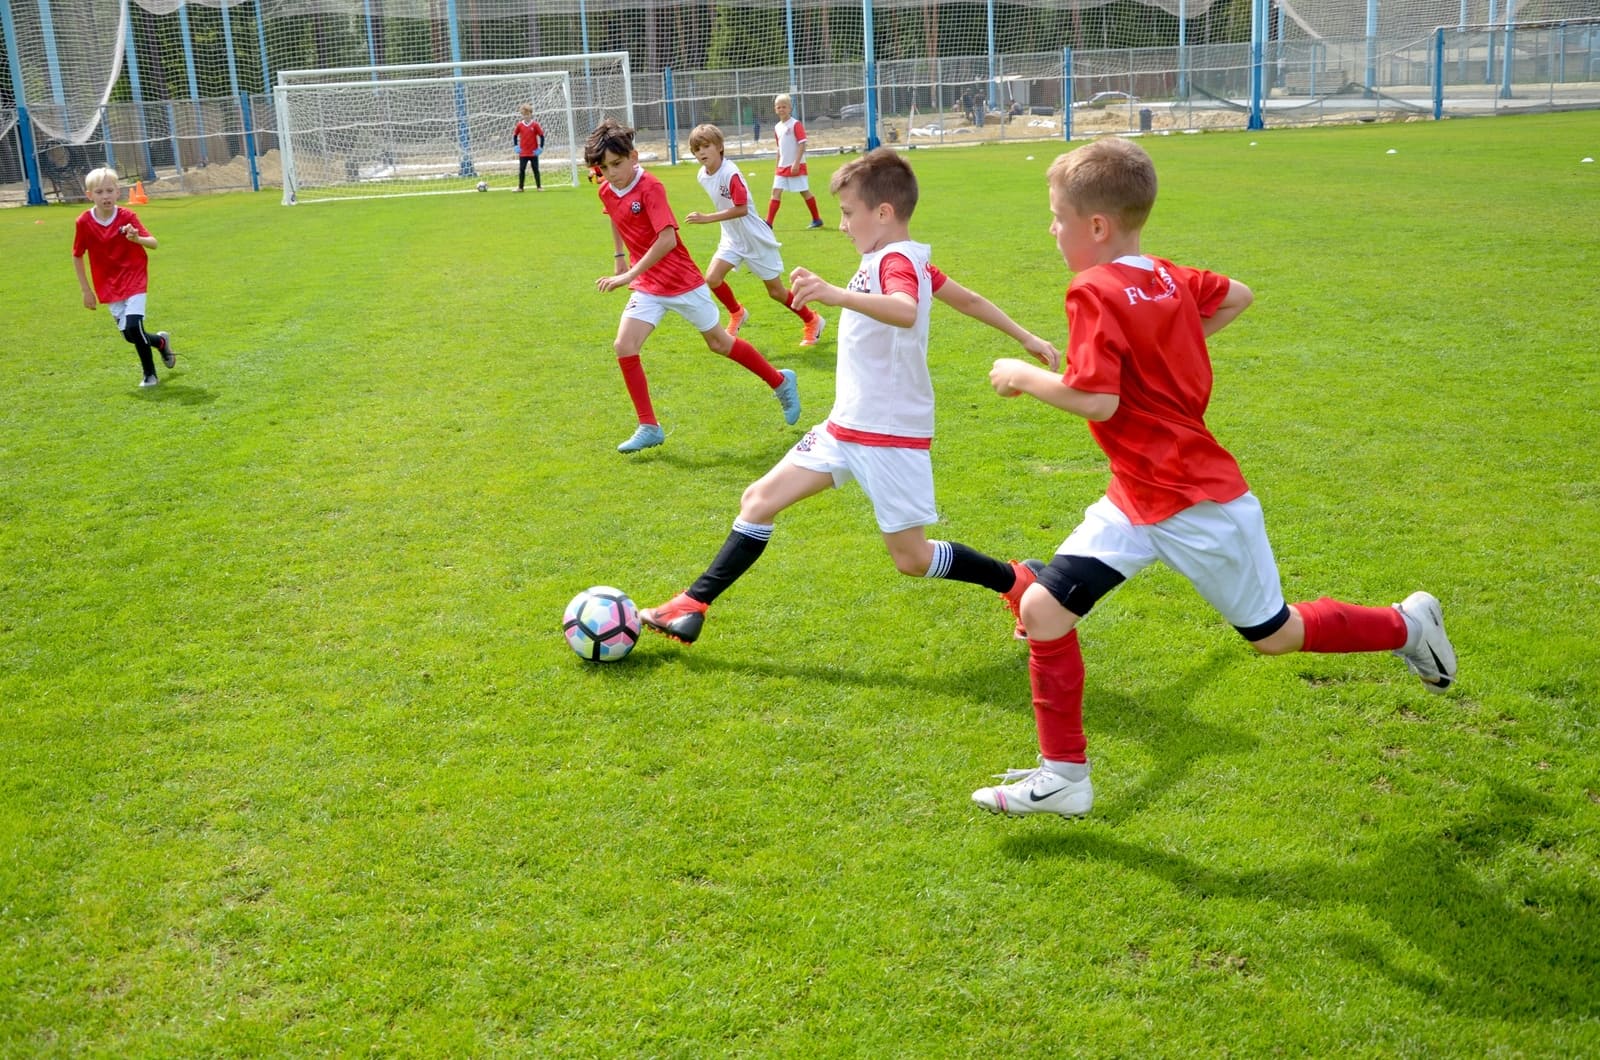 «FC Stuttgart - Кратово» – футбольный лагерь в Подмосковье, фото 6